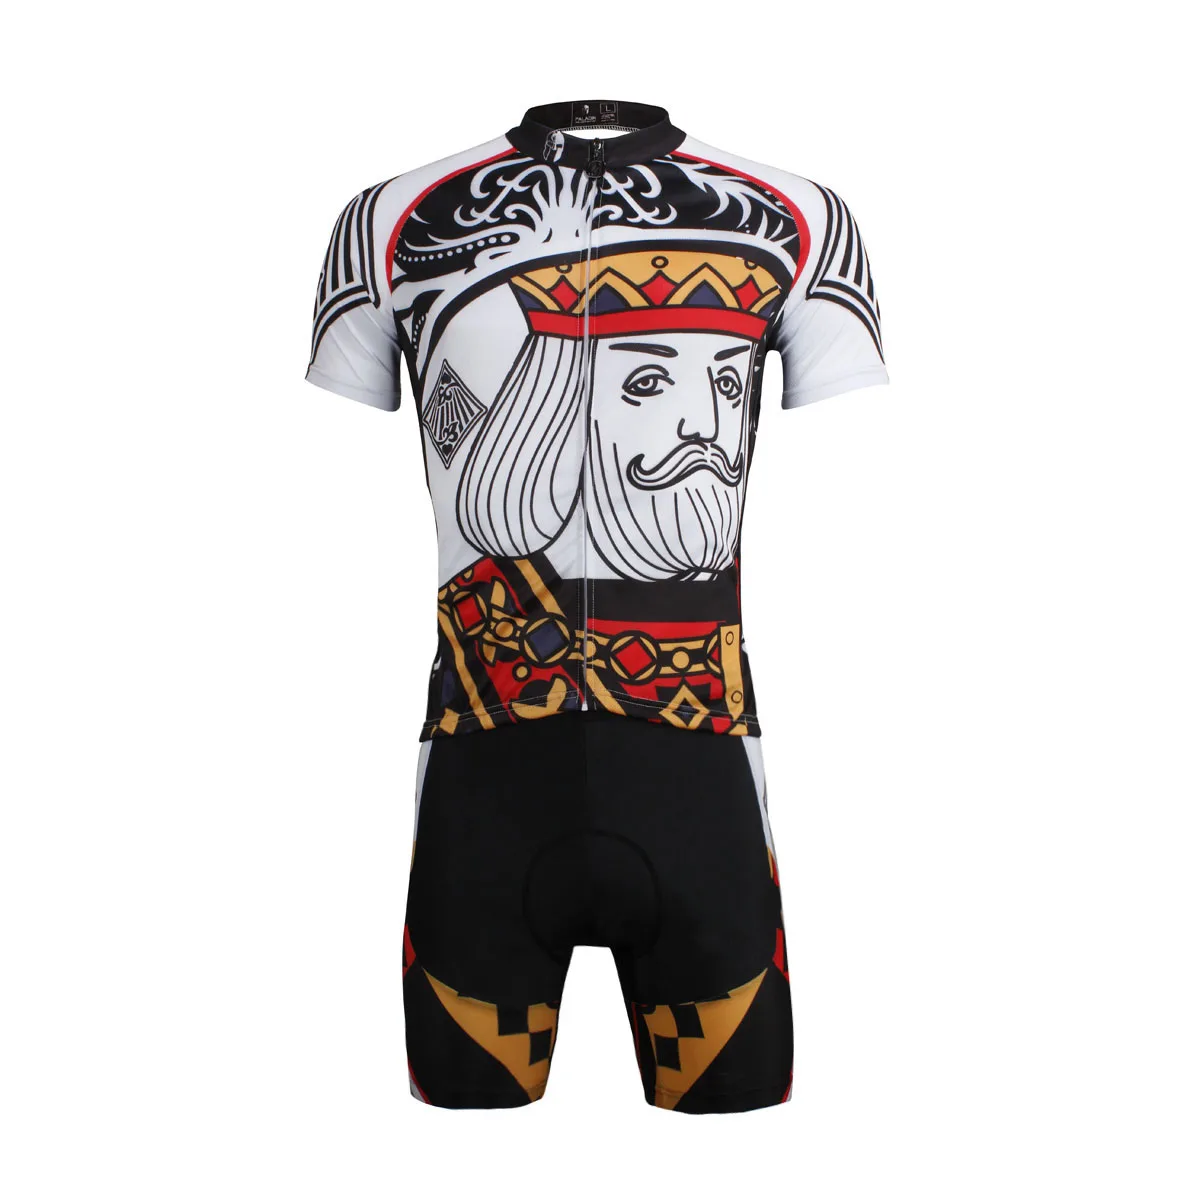 Высокое качество Велоспорт Джерси мужская летняя одежда для велоспорта короткий рукав велосипед Джерси ILPALADINO одежда для велосипеда PALADIN